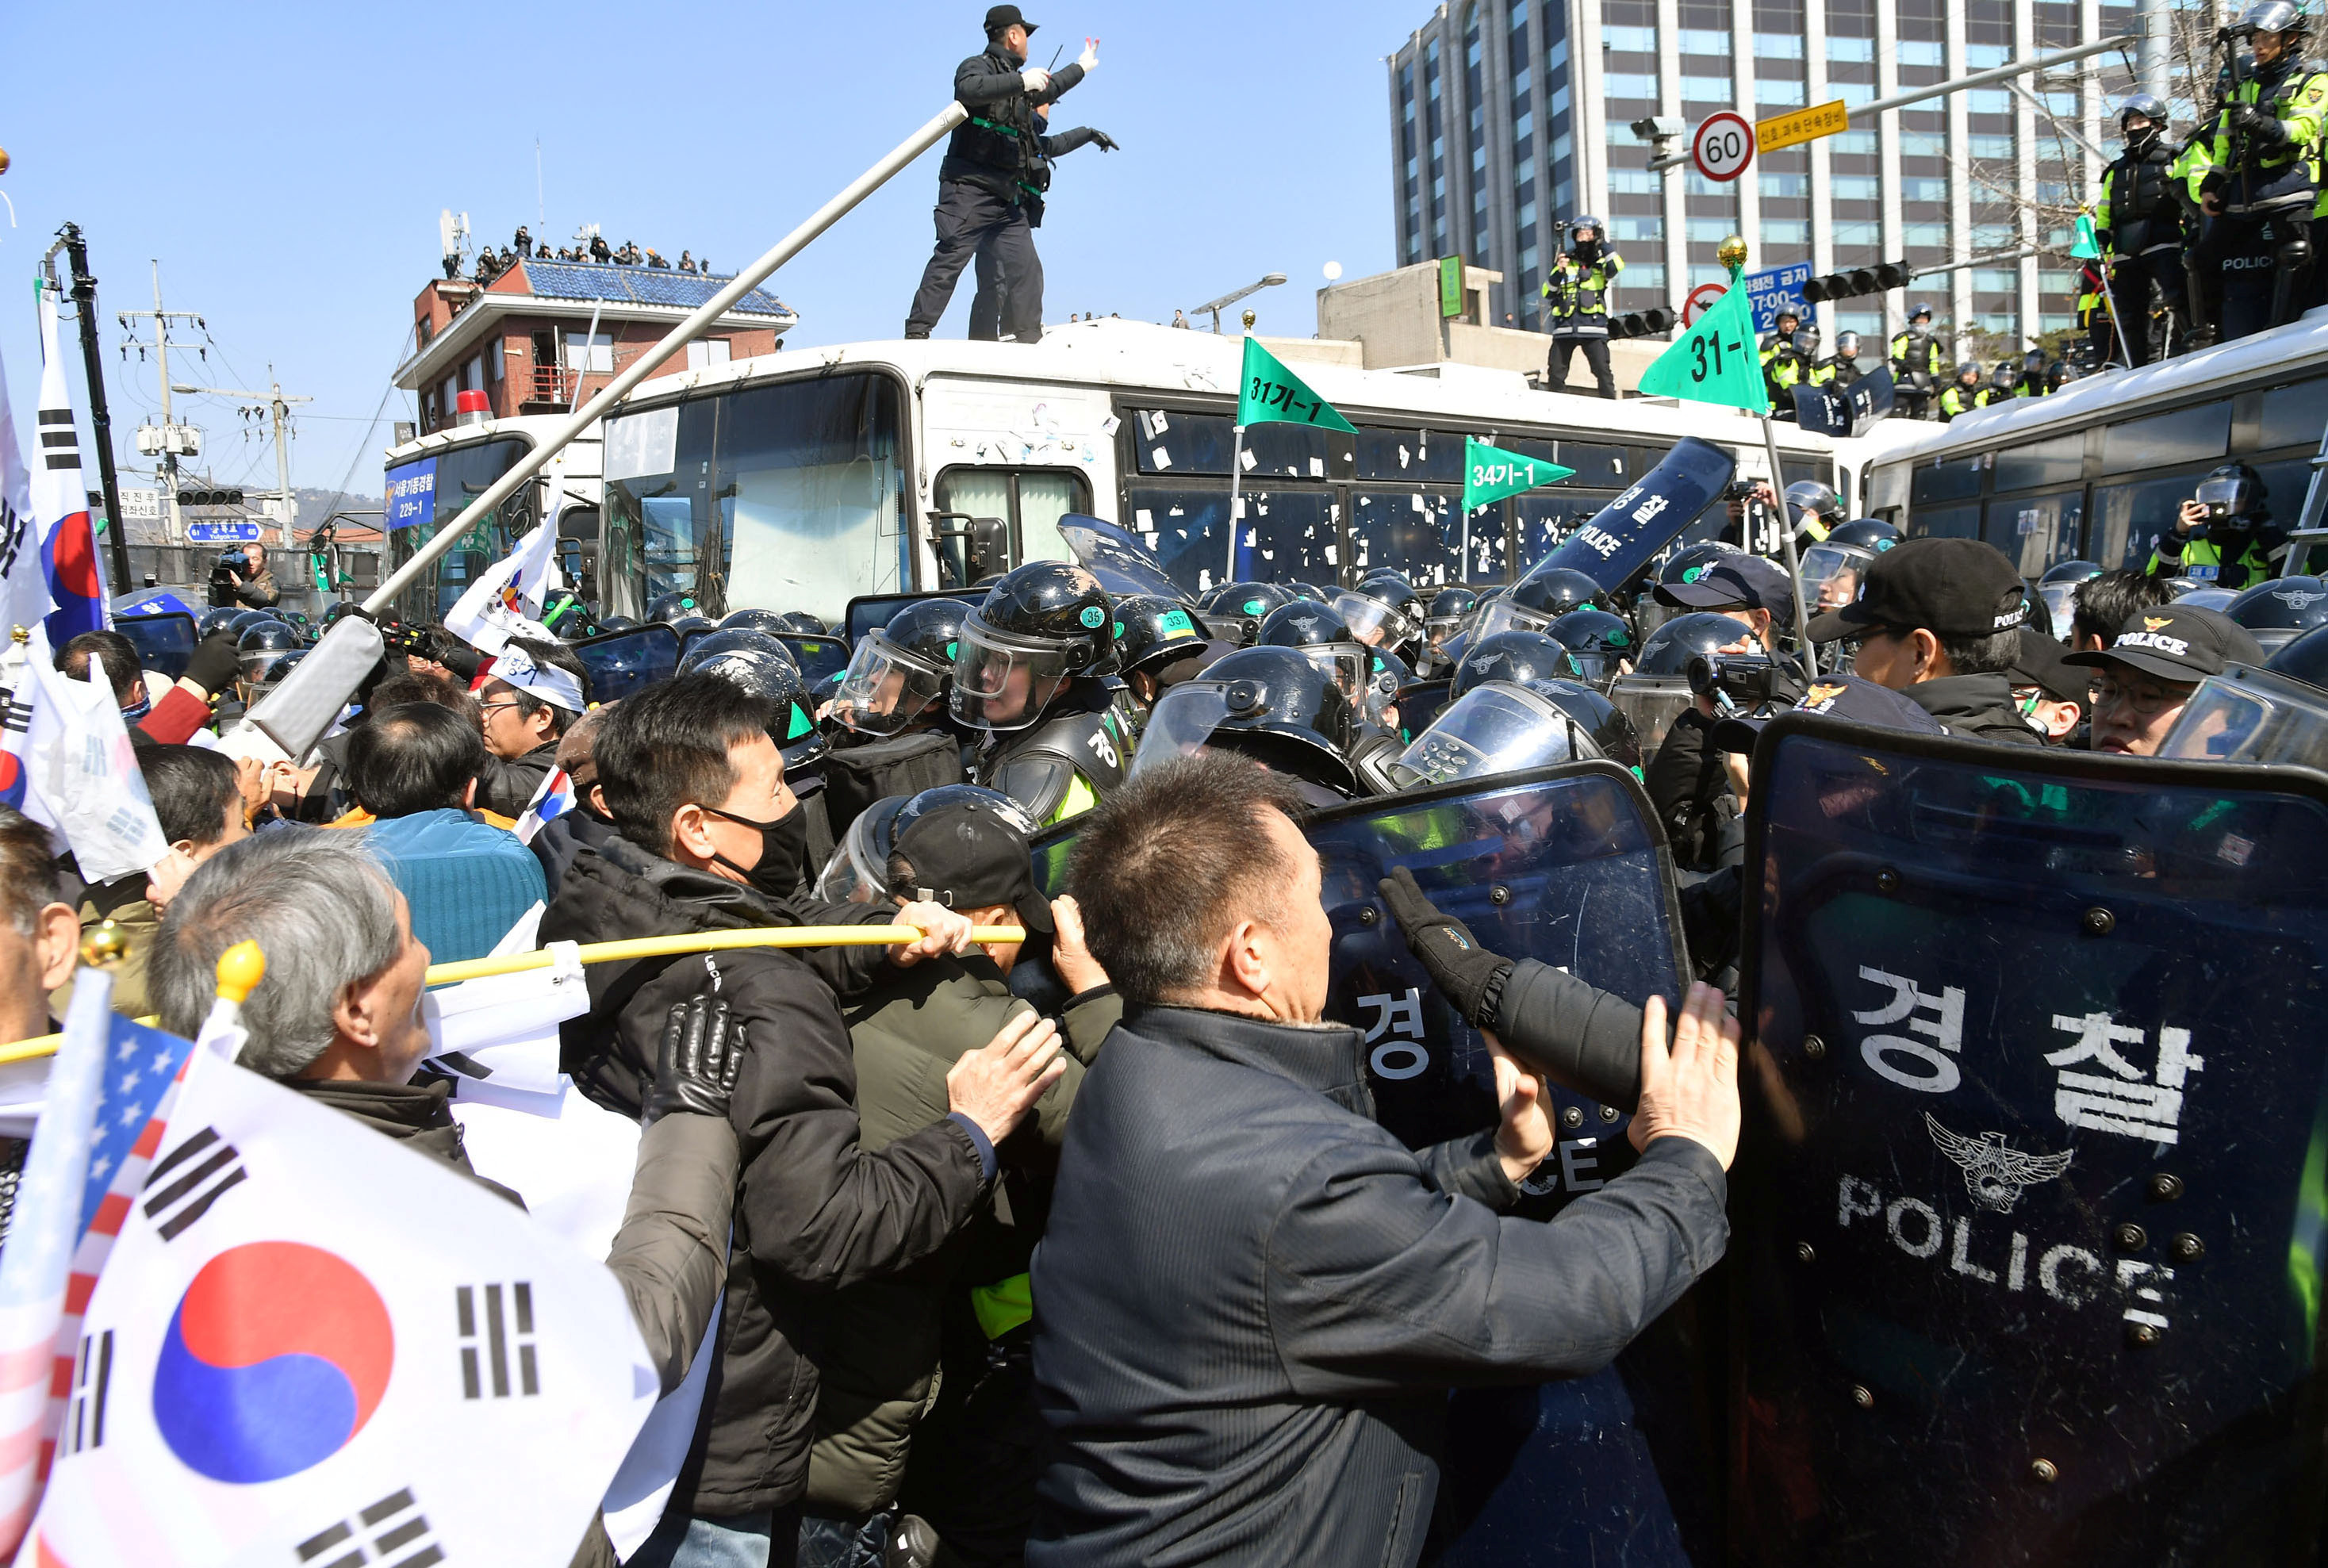 مظاهرات كوريا الجنوبية